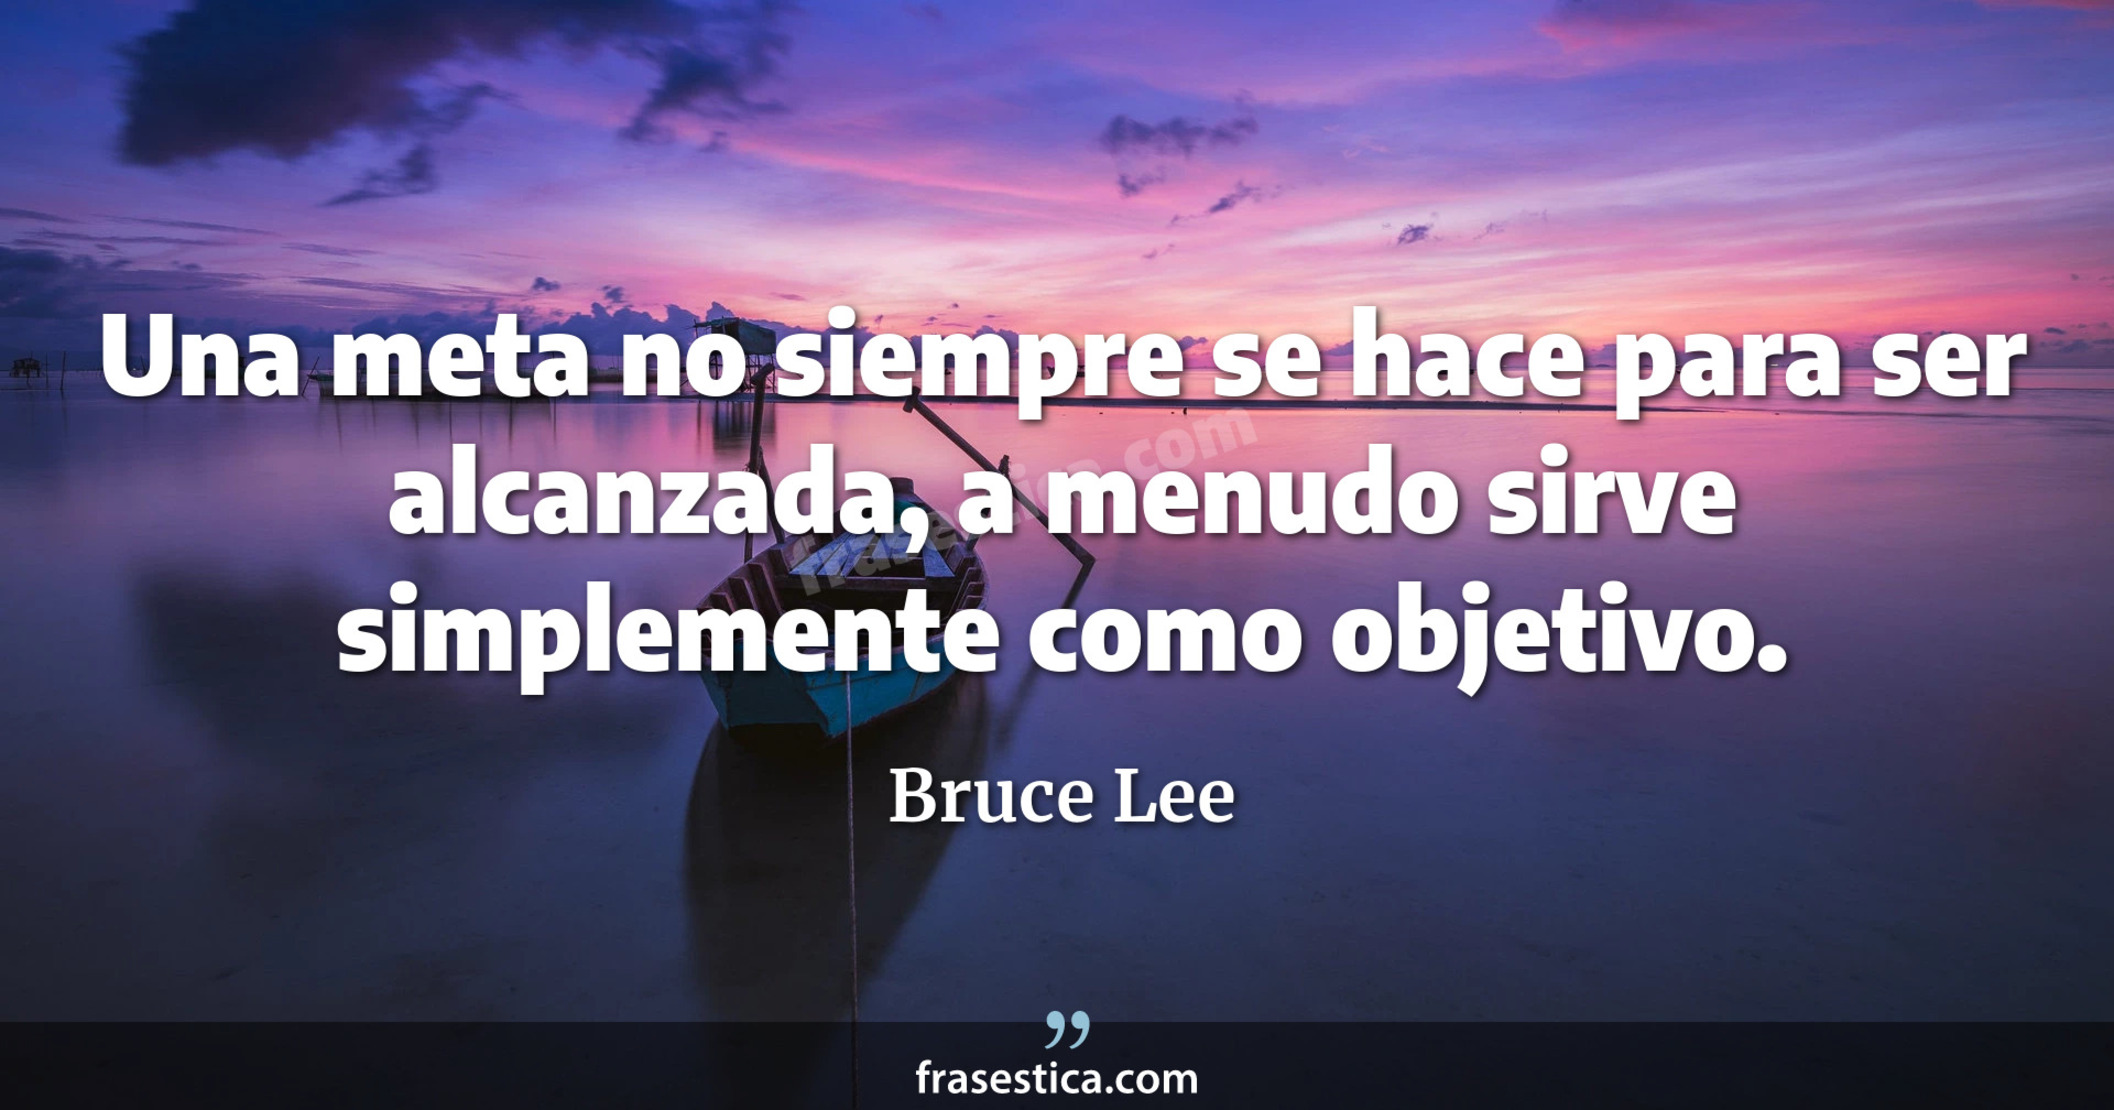 Una meta no siempre se hace para ser alcanzada, a menudo sirve simplemente como objetivo. - Bruce Lee